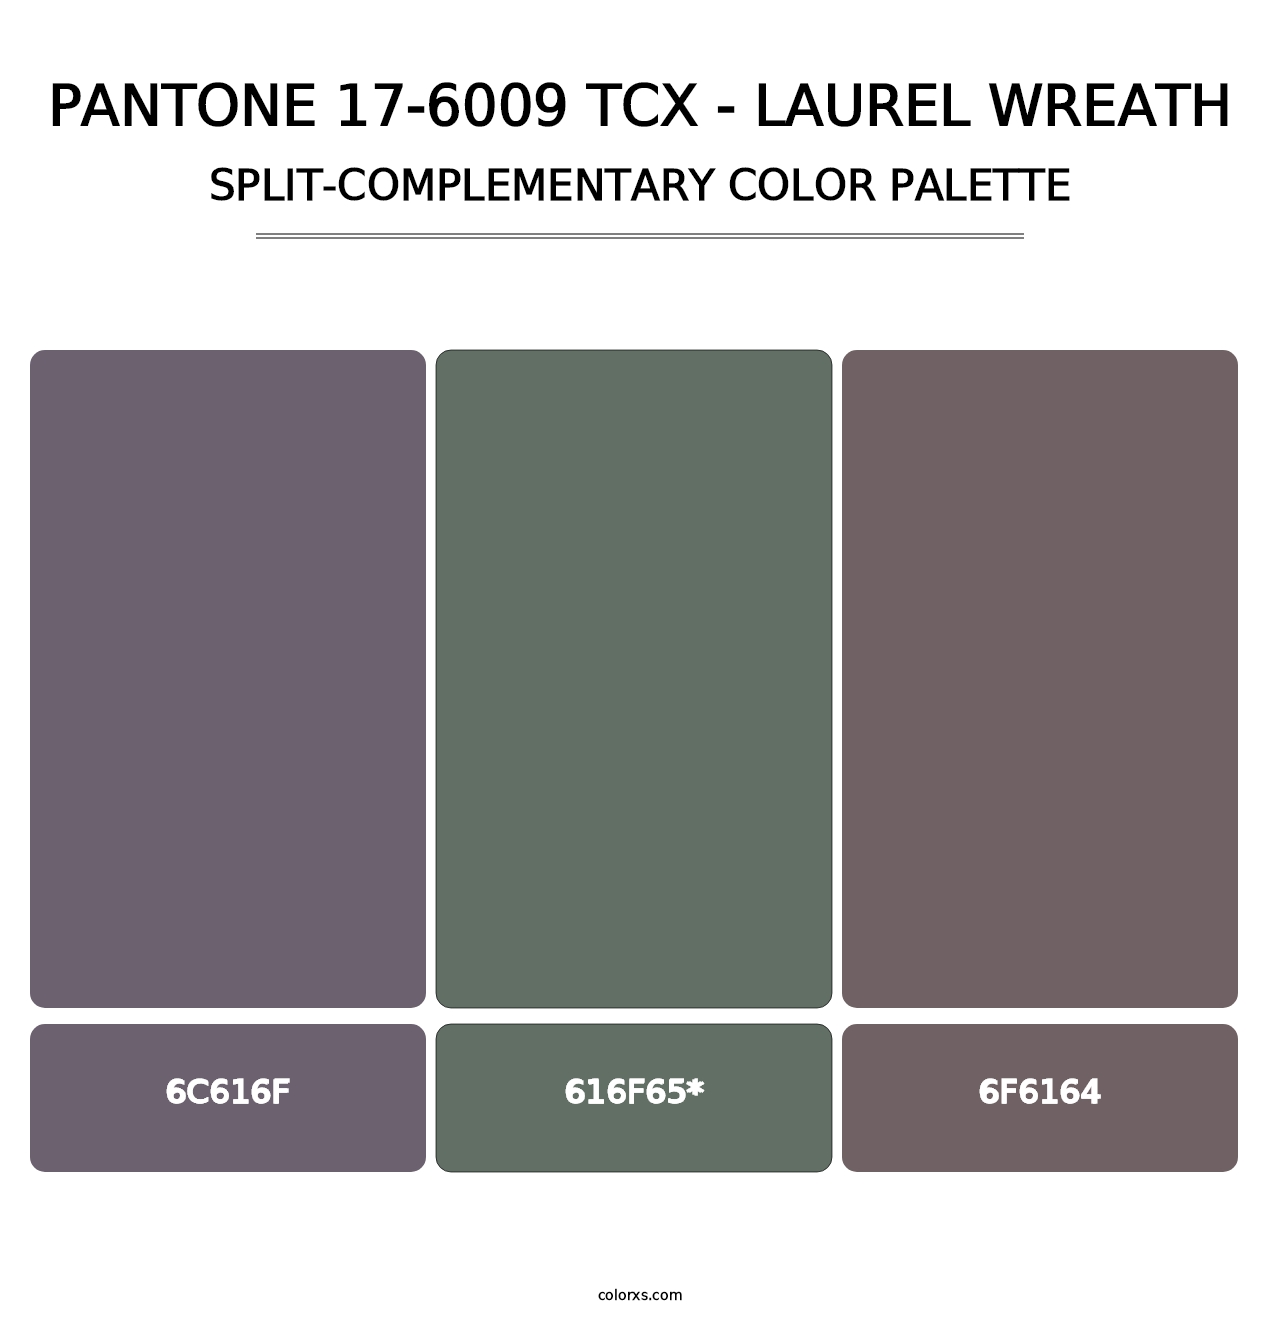 PANTONE 17-6009 TCX - Laurel Wreath - Split-Complementary Color Palette